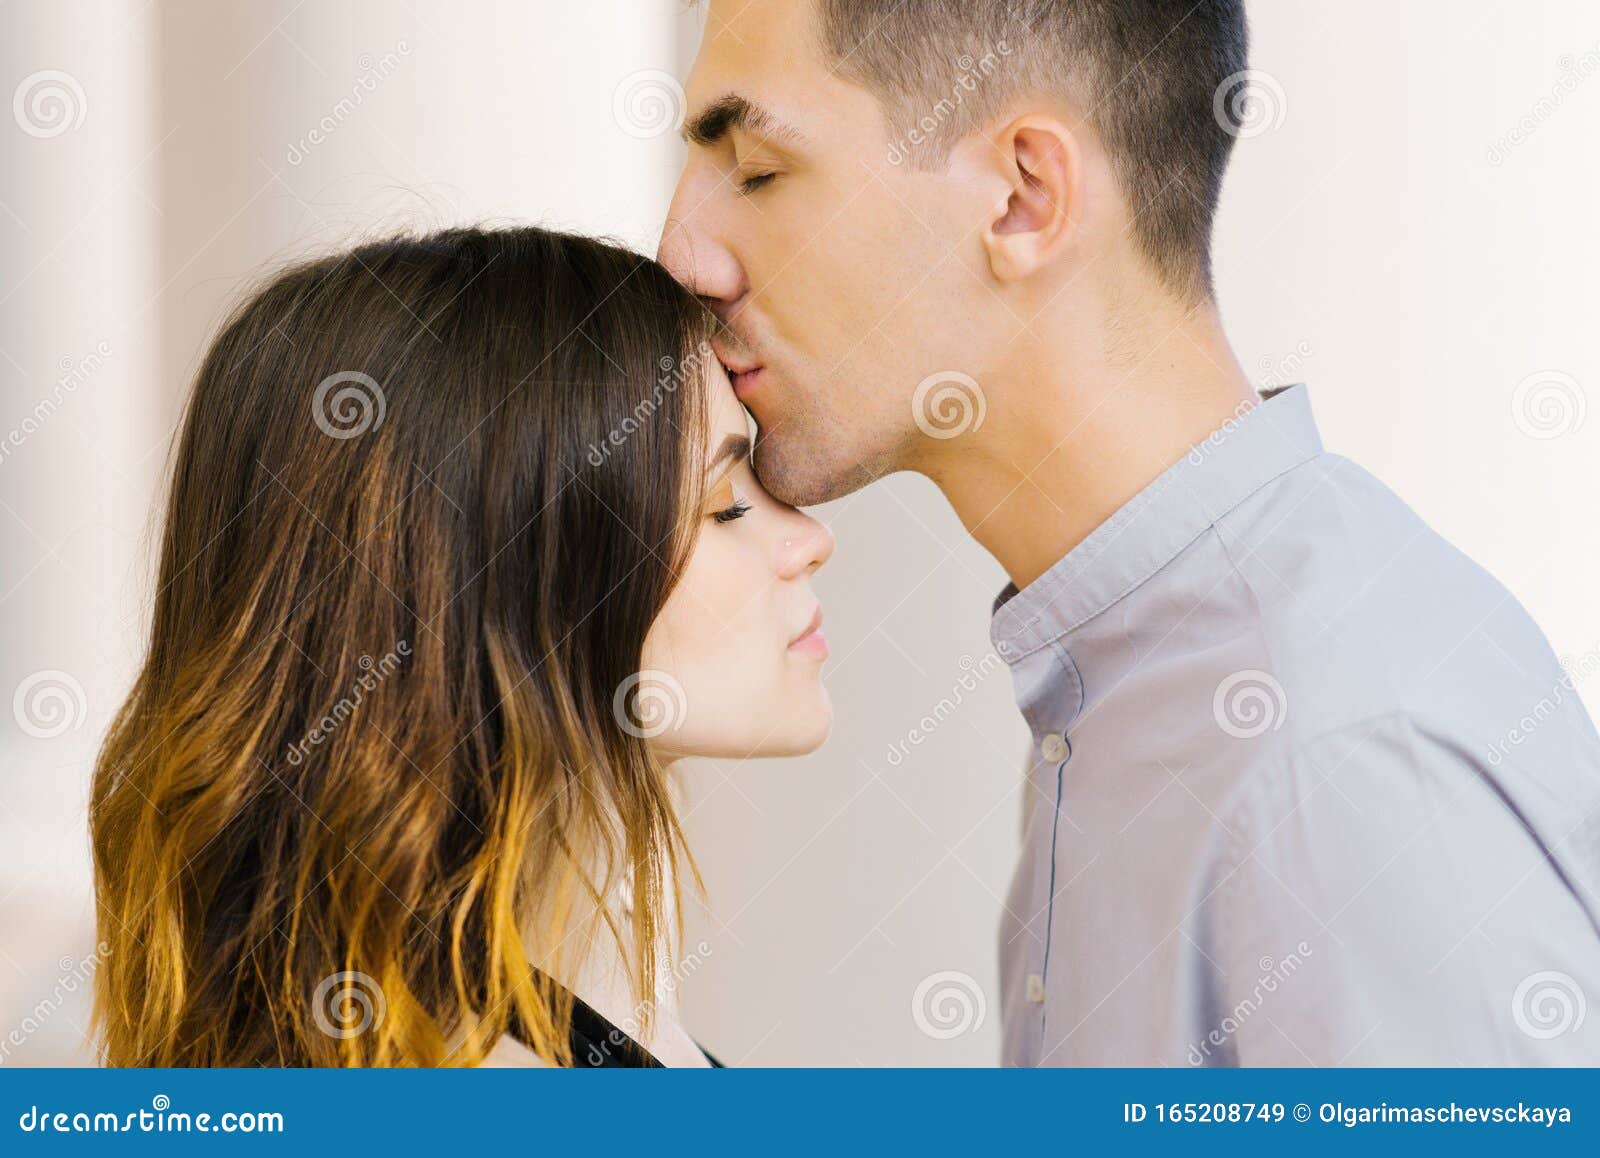 Можно целовать в лоб. Поцелуй в лоб. Отеческий поцелуй в лоб. Поцелуй в лоб от мужчины. Парень целует девушку в лоб.